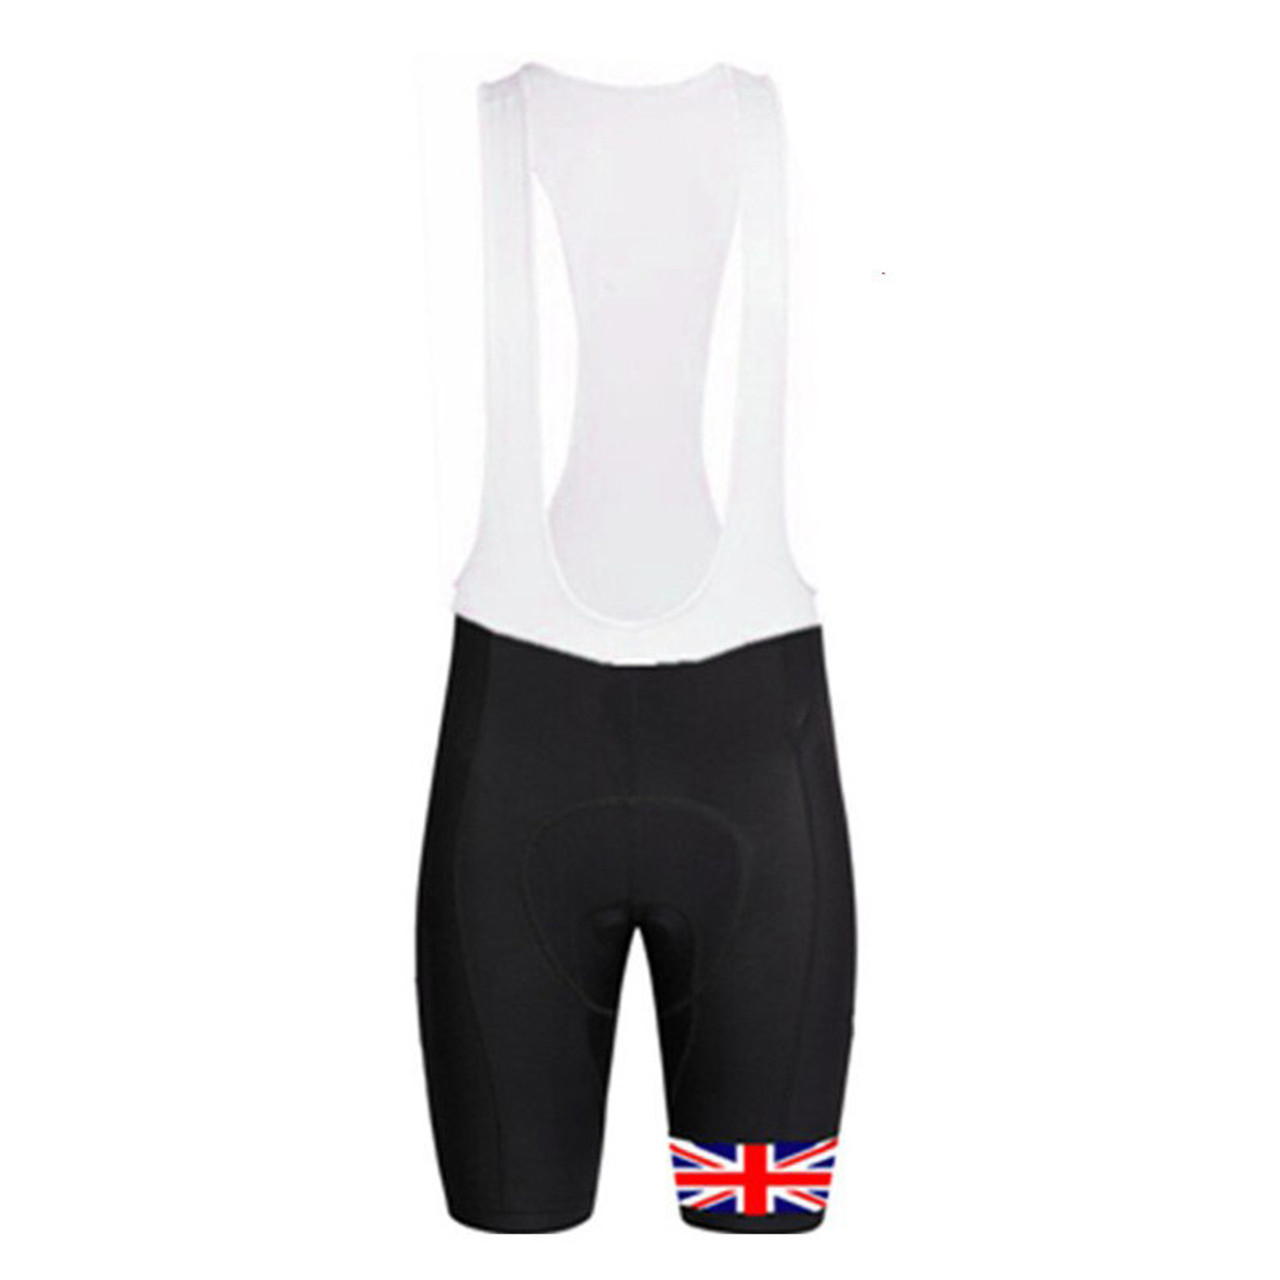 cycling bib shorts sale uk